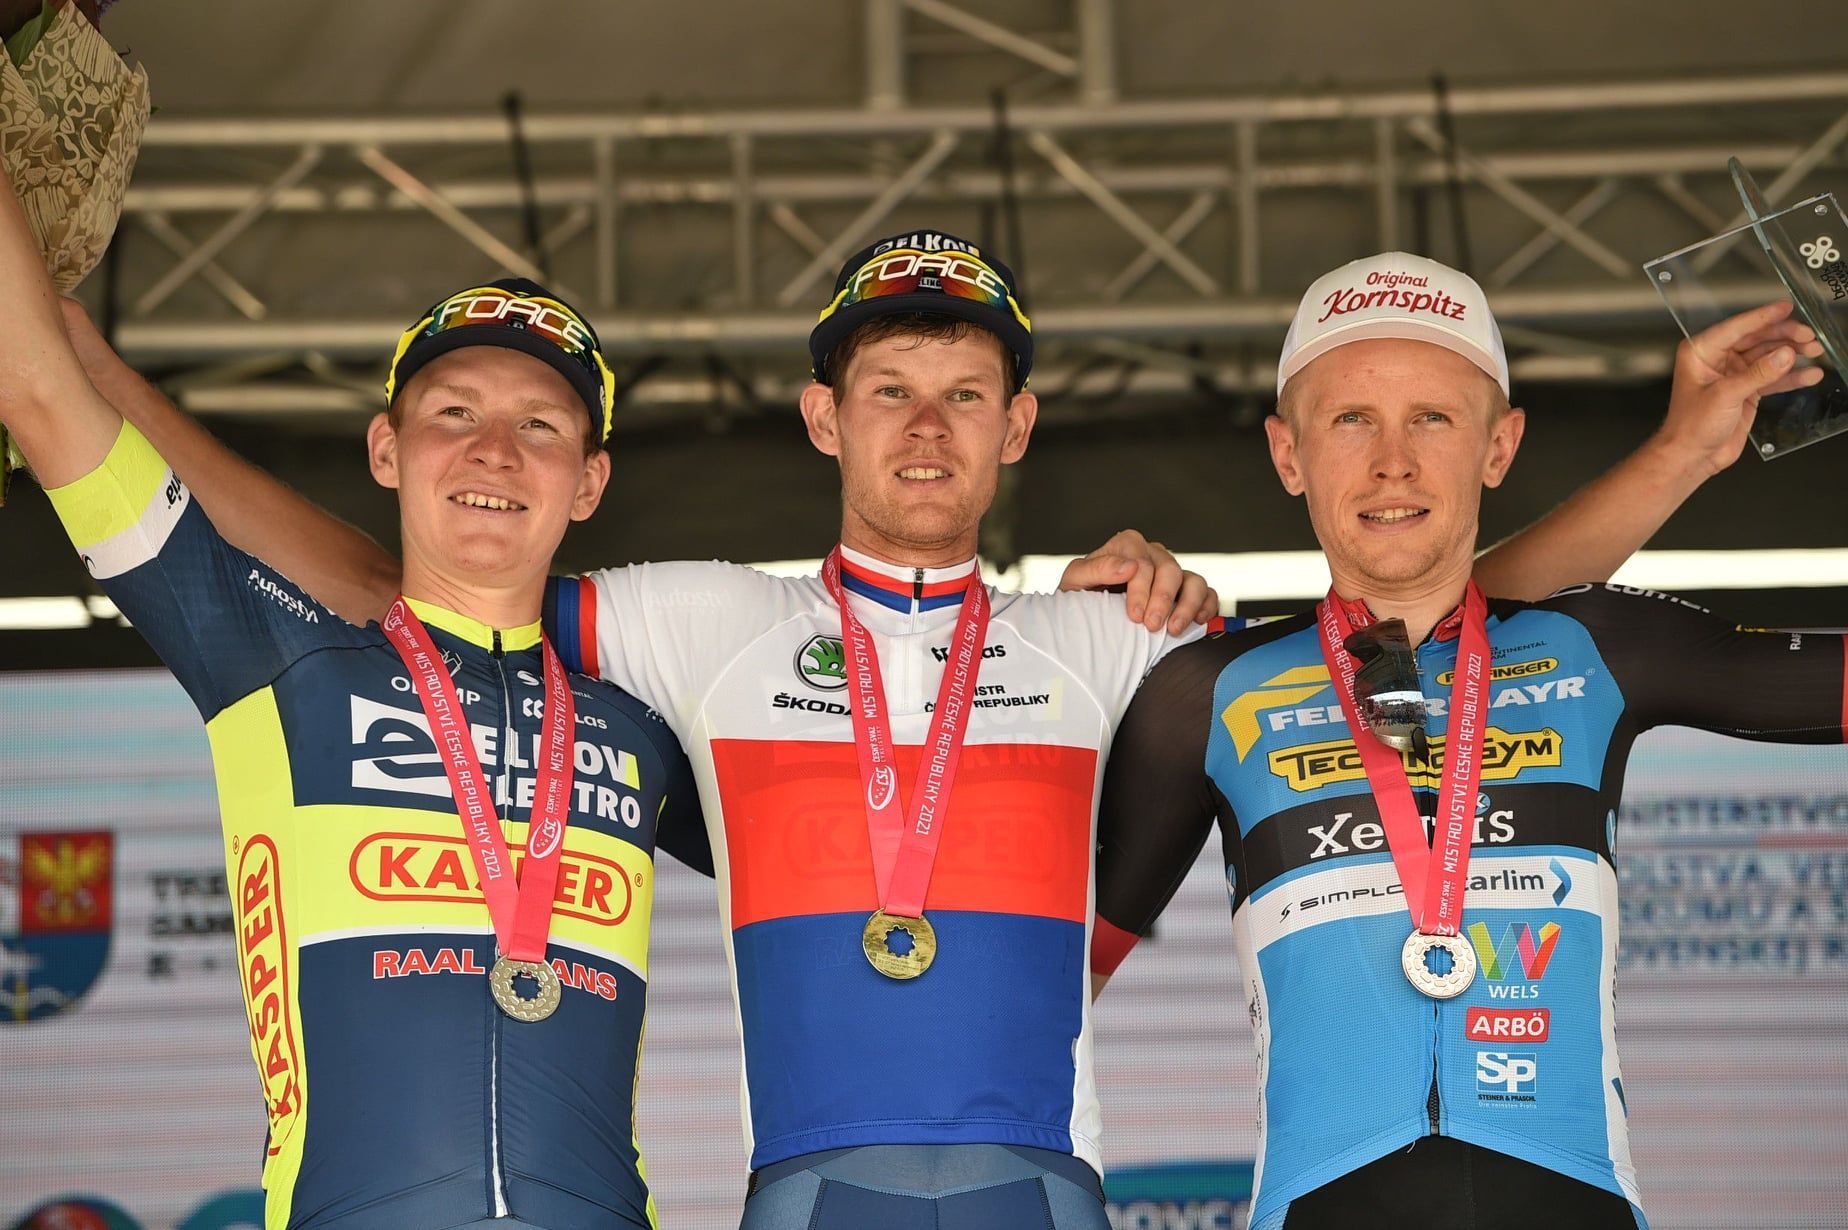 MČr v cyklistice 2021: Vítěz silničního závodu Michael Kukrle, druhý Dominik Neuman (vlevo) a třetí Daniel Turek (vpravo)